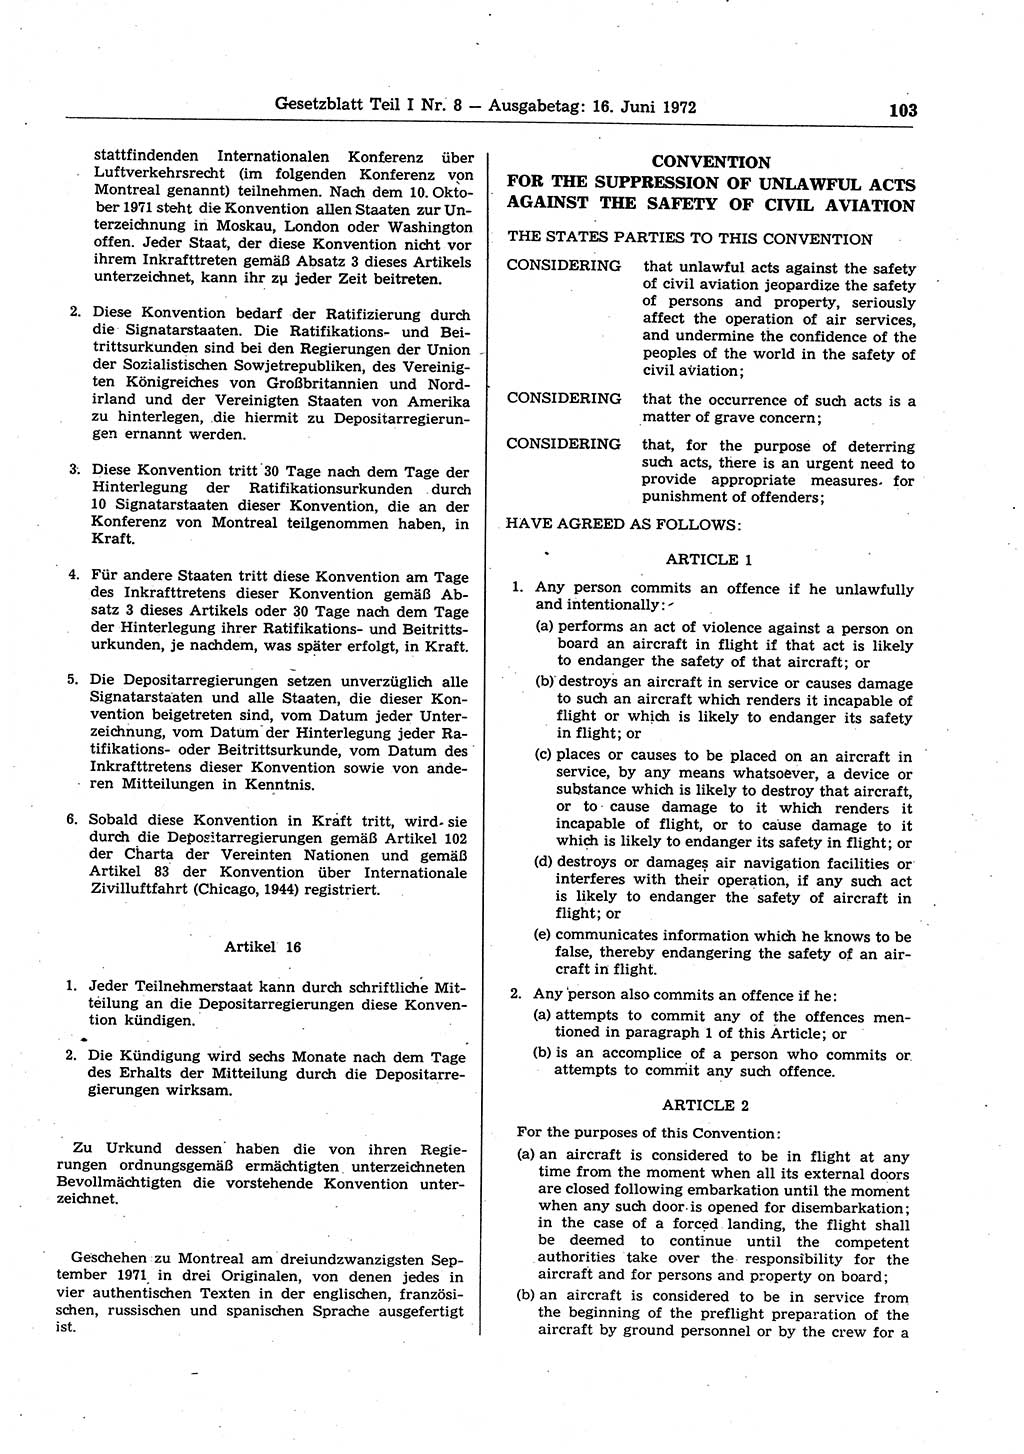 Gesetzblatt (GBl.) der Deutschen Demokratischen Republik (DDR) Teil Ⅰ 1972, Seite 103 (GBl. DDR Ⅰ 1972, S. 103)